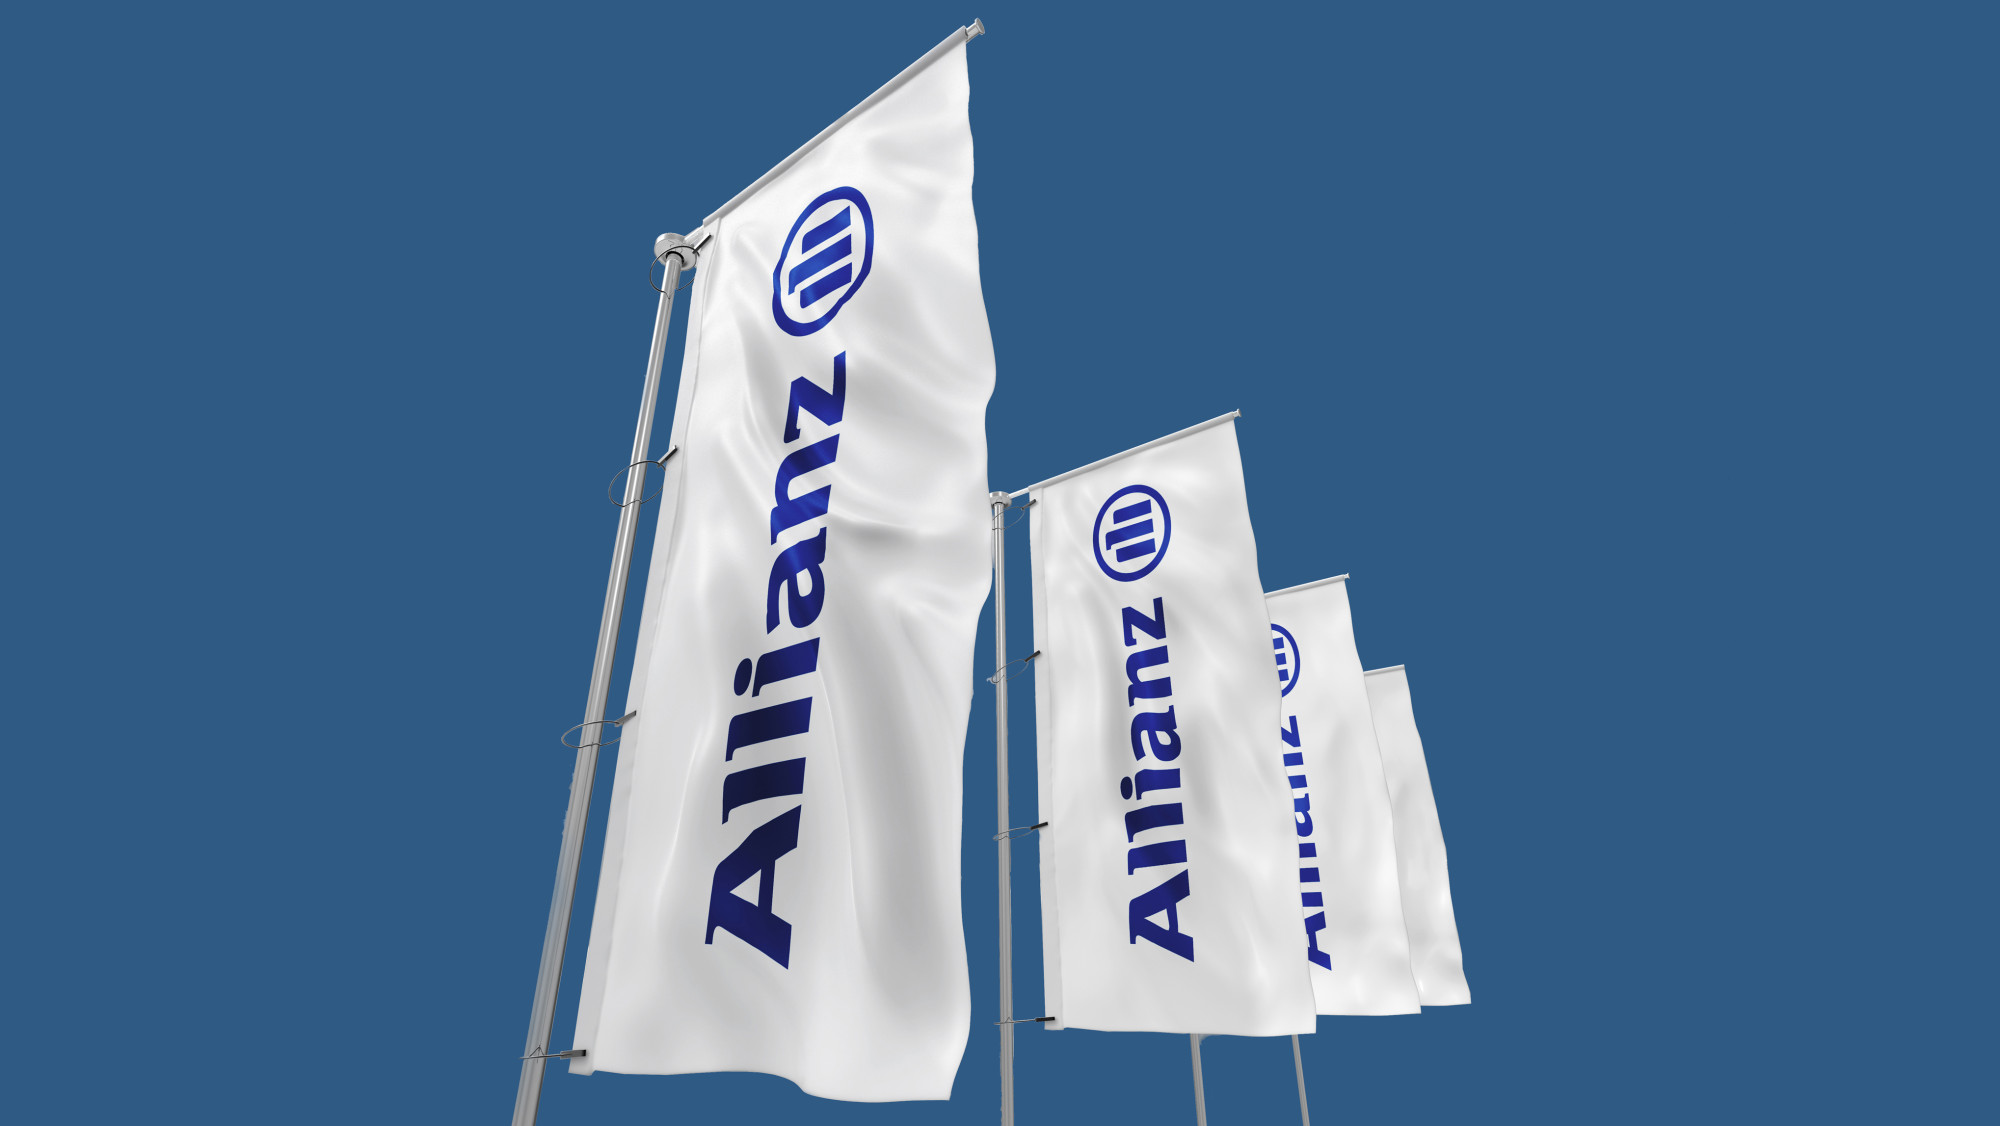 Publication des résultats financiers annuels 2022 du groupe Allianz